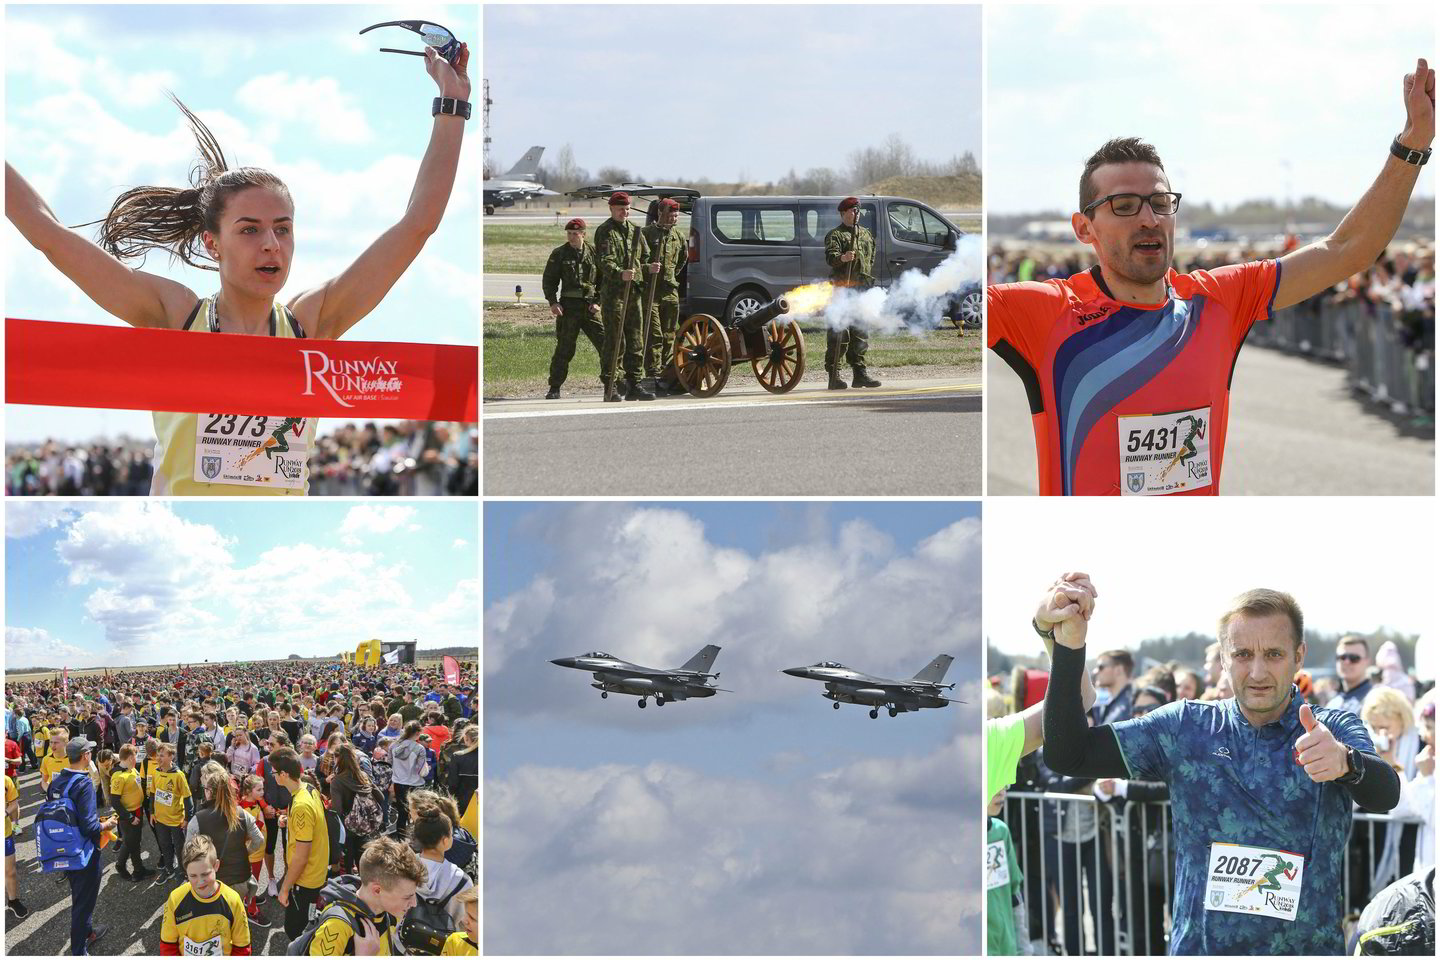  Penktą kartą surengtoje šventėje "Runway Run" dalyvavo per 7 tūkstančius žmonių.<br> G.Šiupario nuotr.